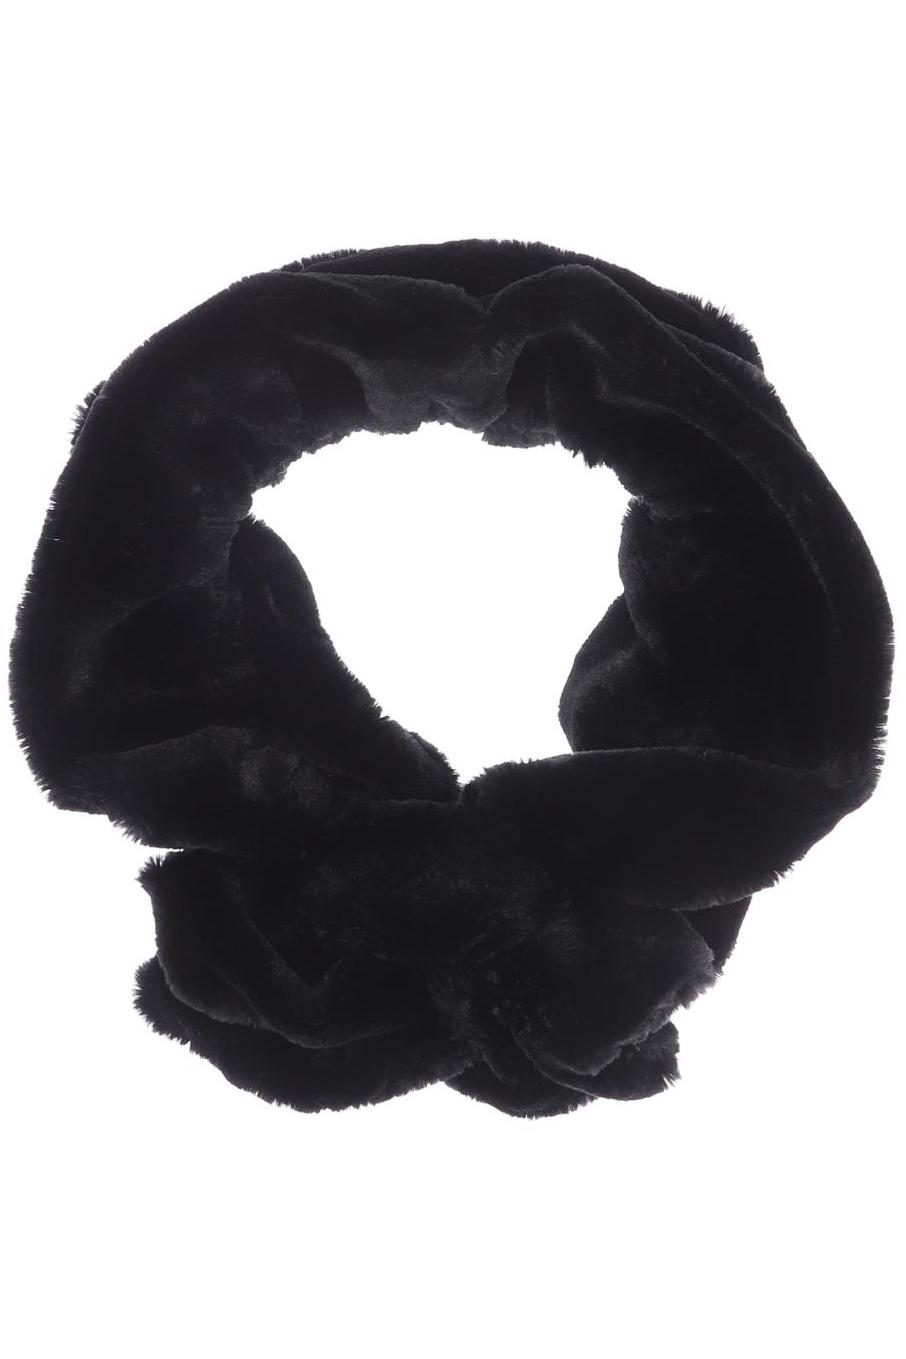 Passigatti Damen Schal, schwarz, Gr. von Passigatti